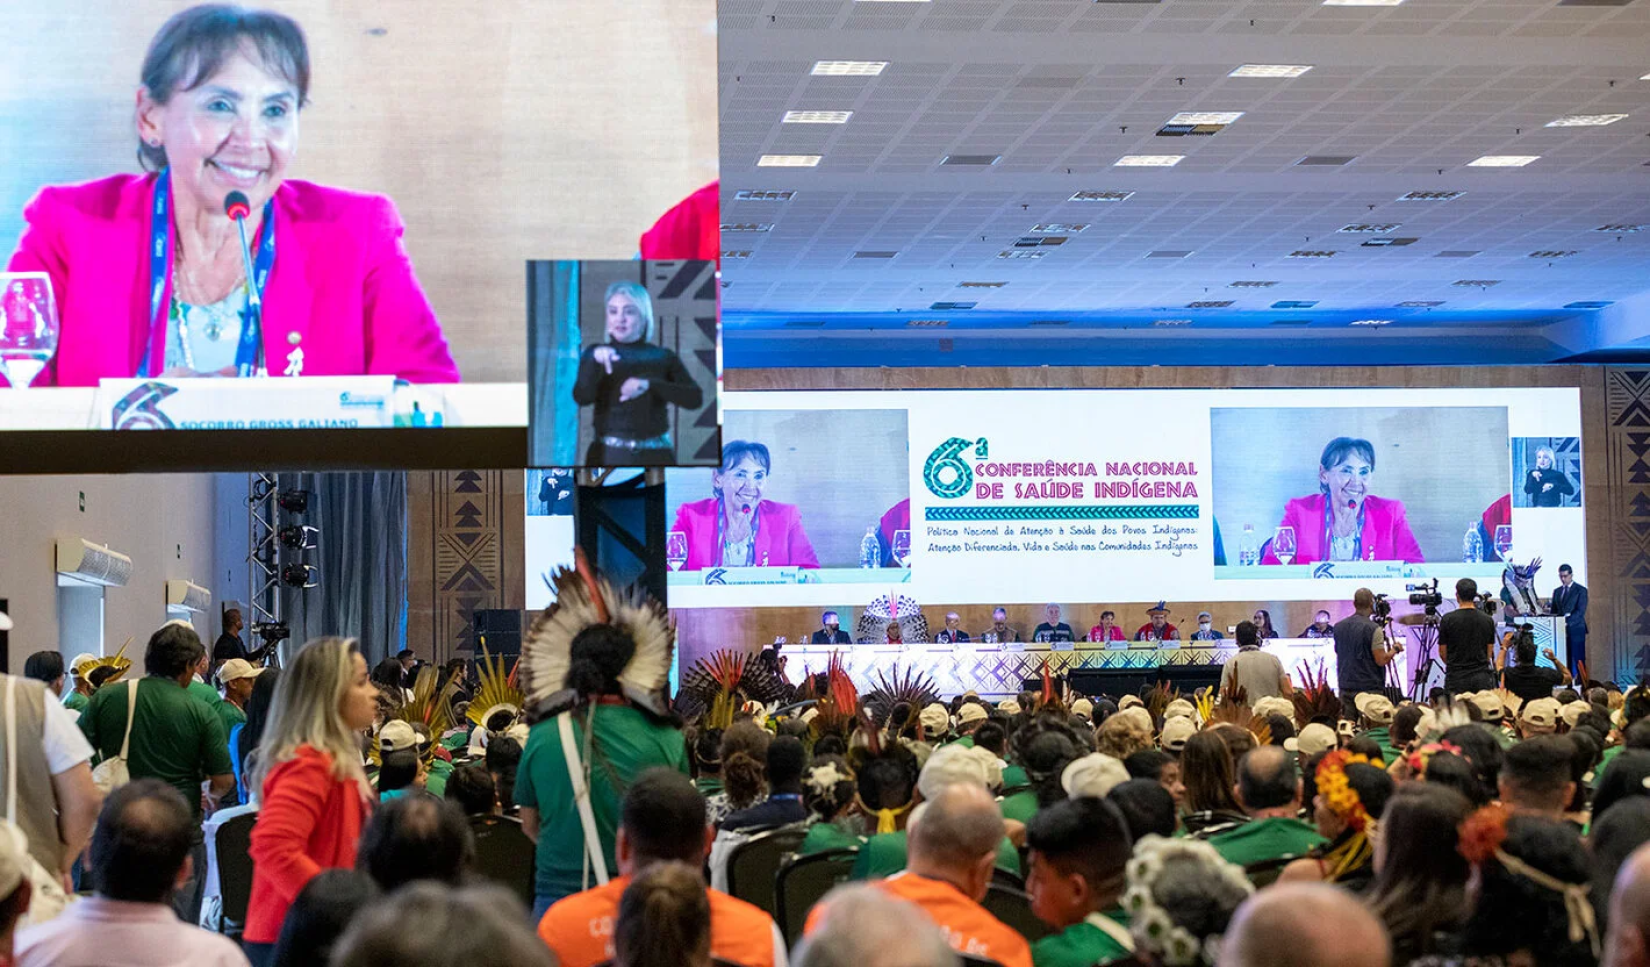 OPAS destaca importância da construção coletiva e da participação social durante Conferência de Saúde Indígena no Brasil.